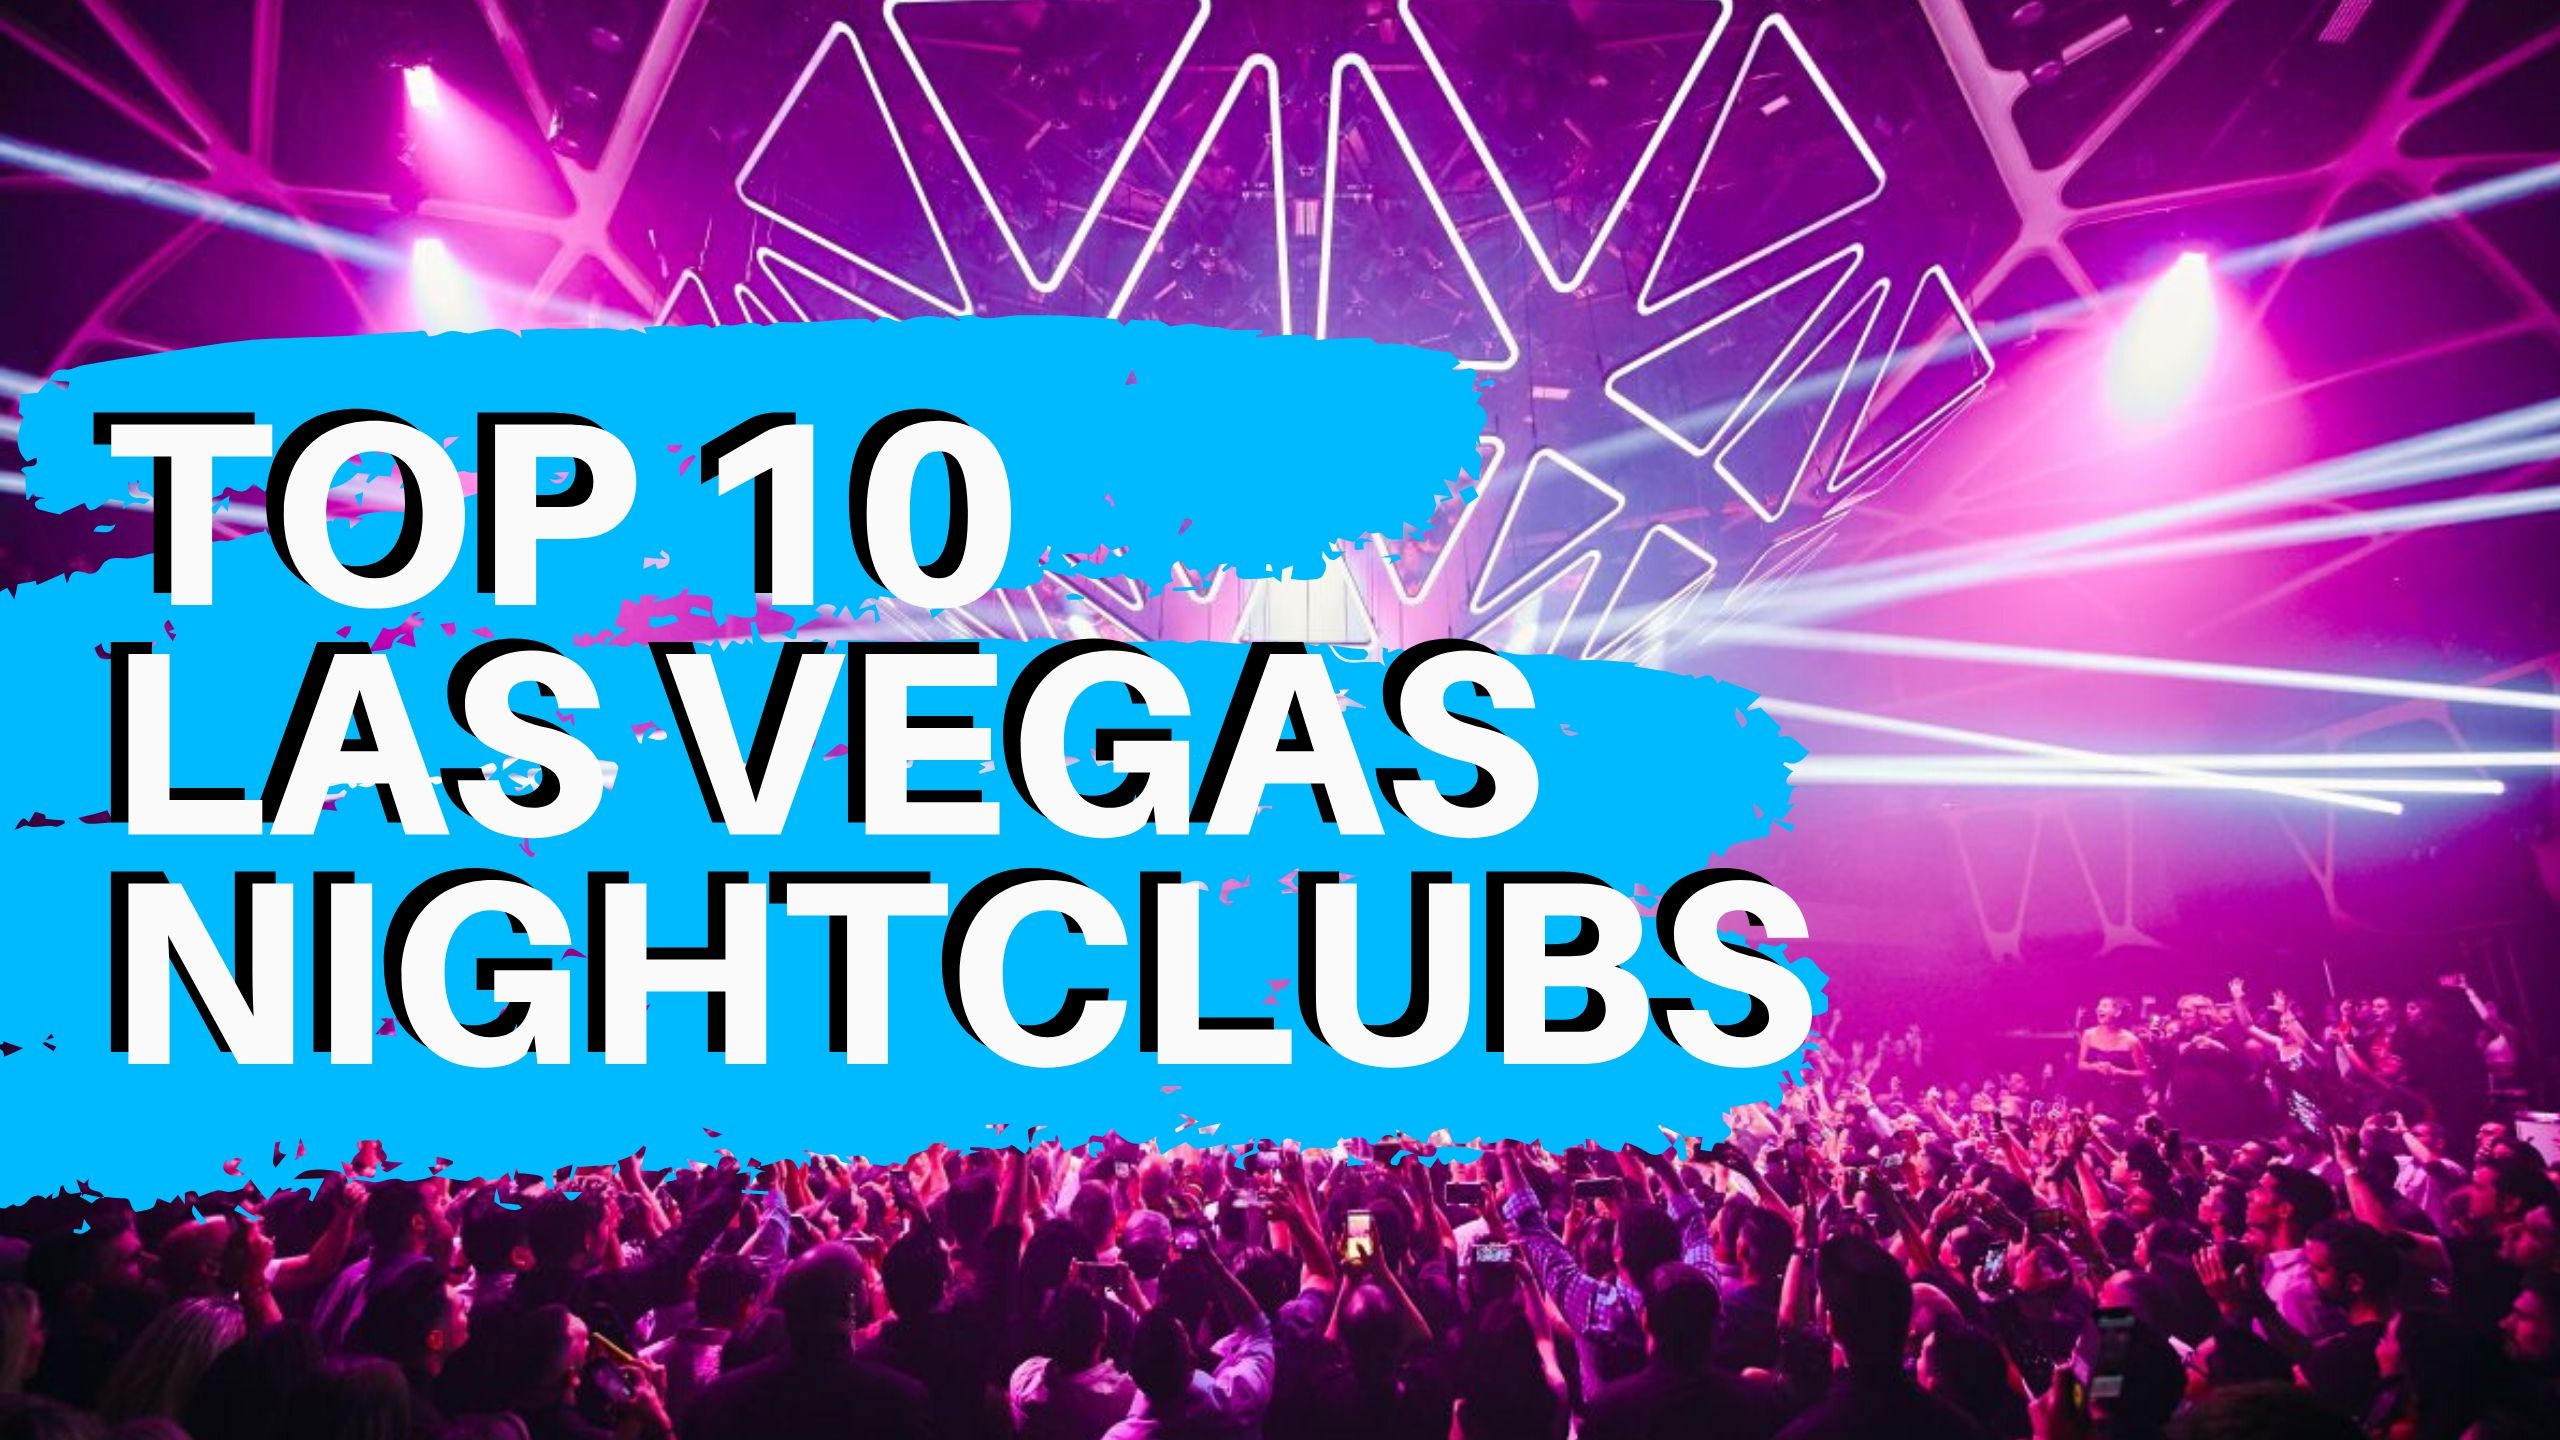 This week's 5 best bets for nightlife in Las Vegas